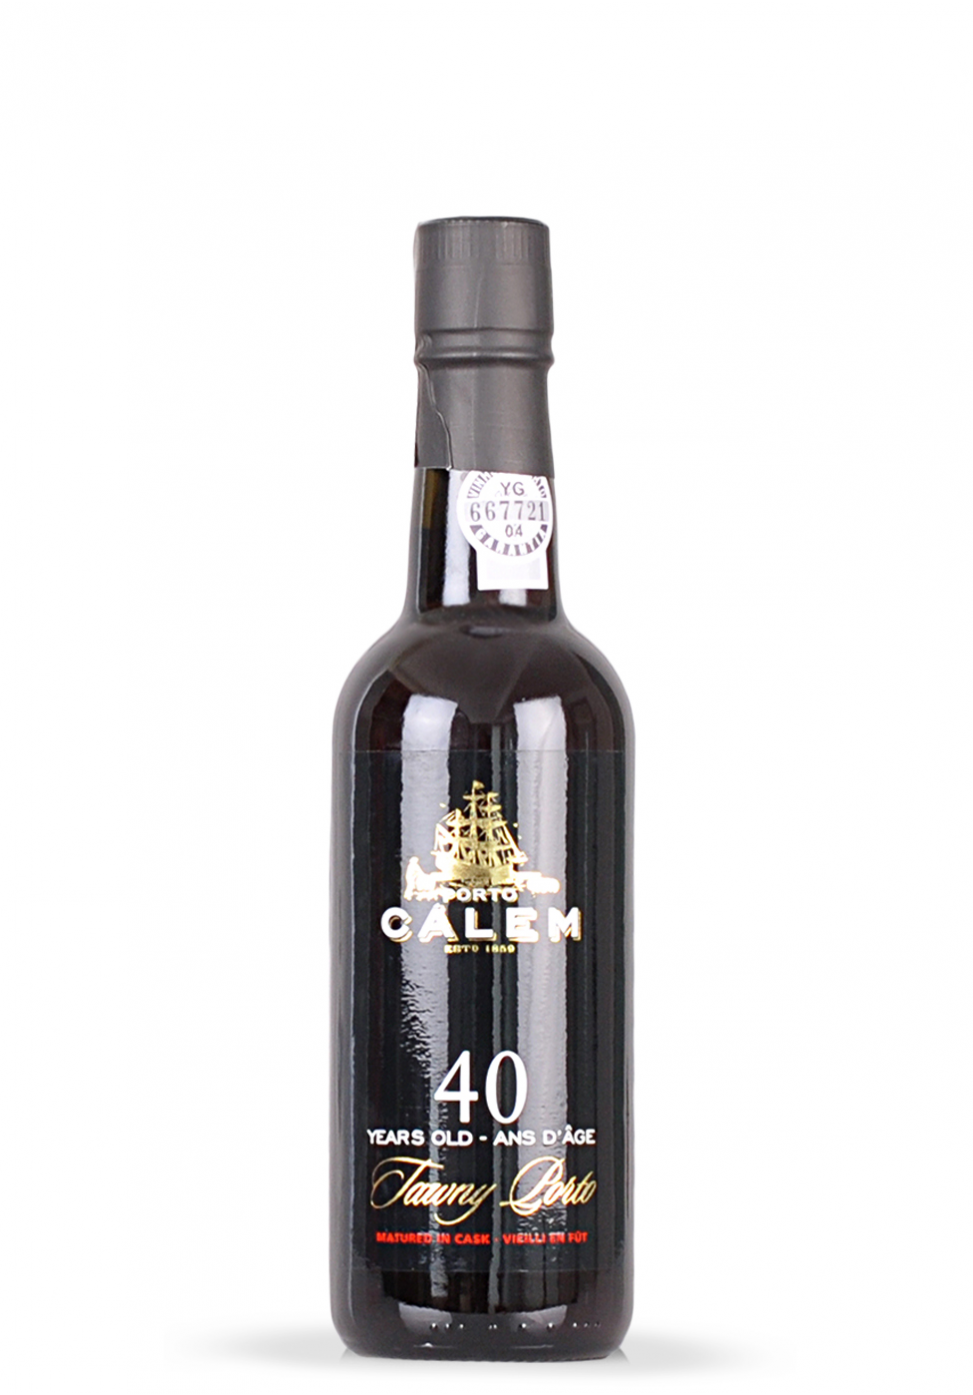 Vin Calem 40 ani, Tawny Porto (0.375L)